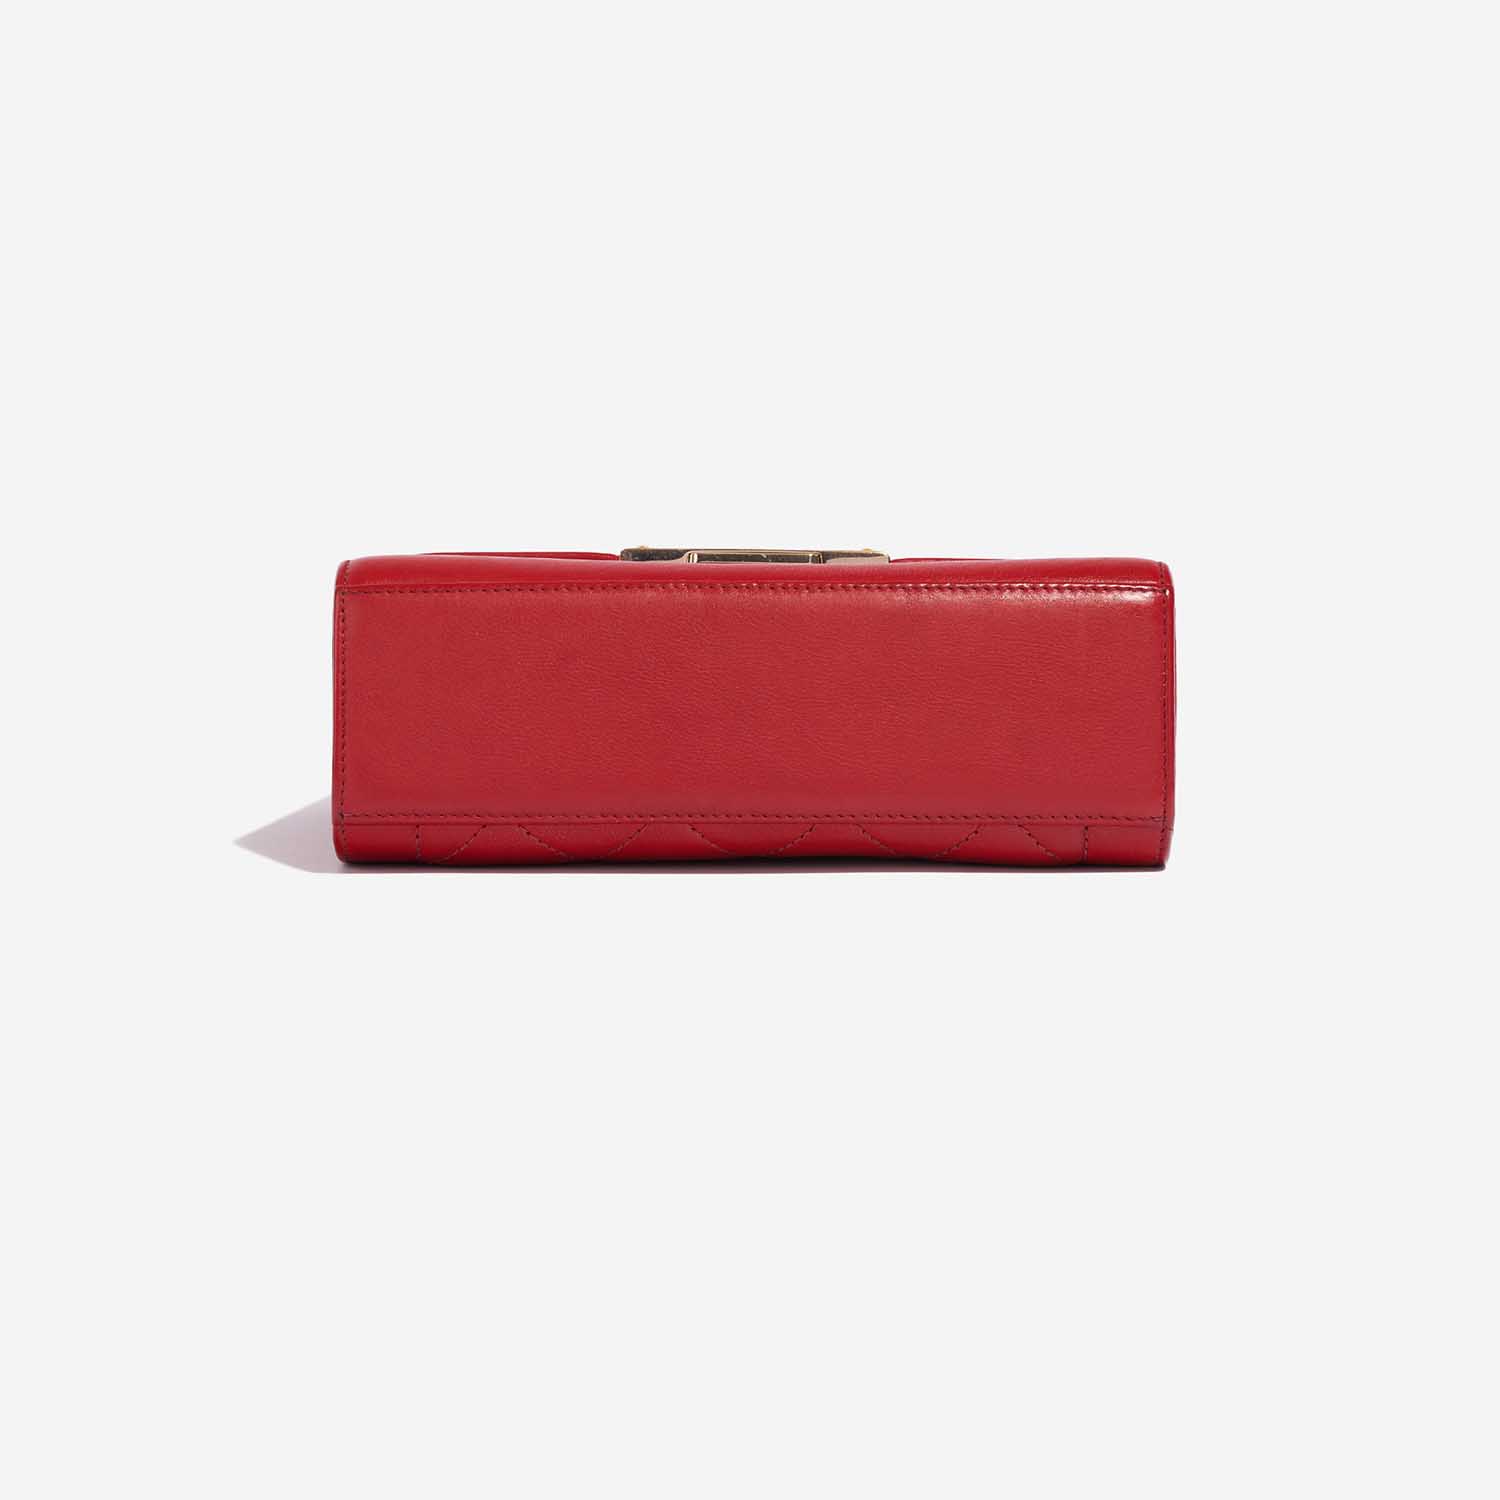 Pre-owned Chanel Tasche Flap Bag Handle Lammleder Red Red Bottom | Verkaufen Sie Ihre Designer-Tasche auf Saclab.com